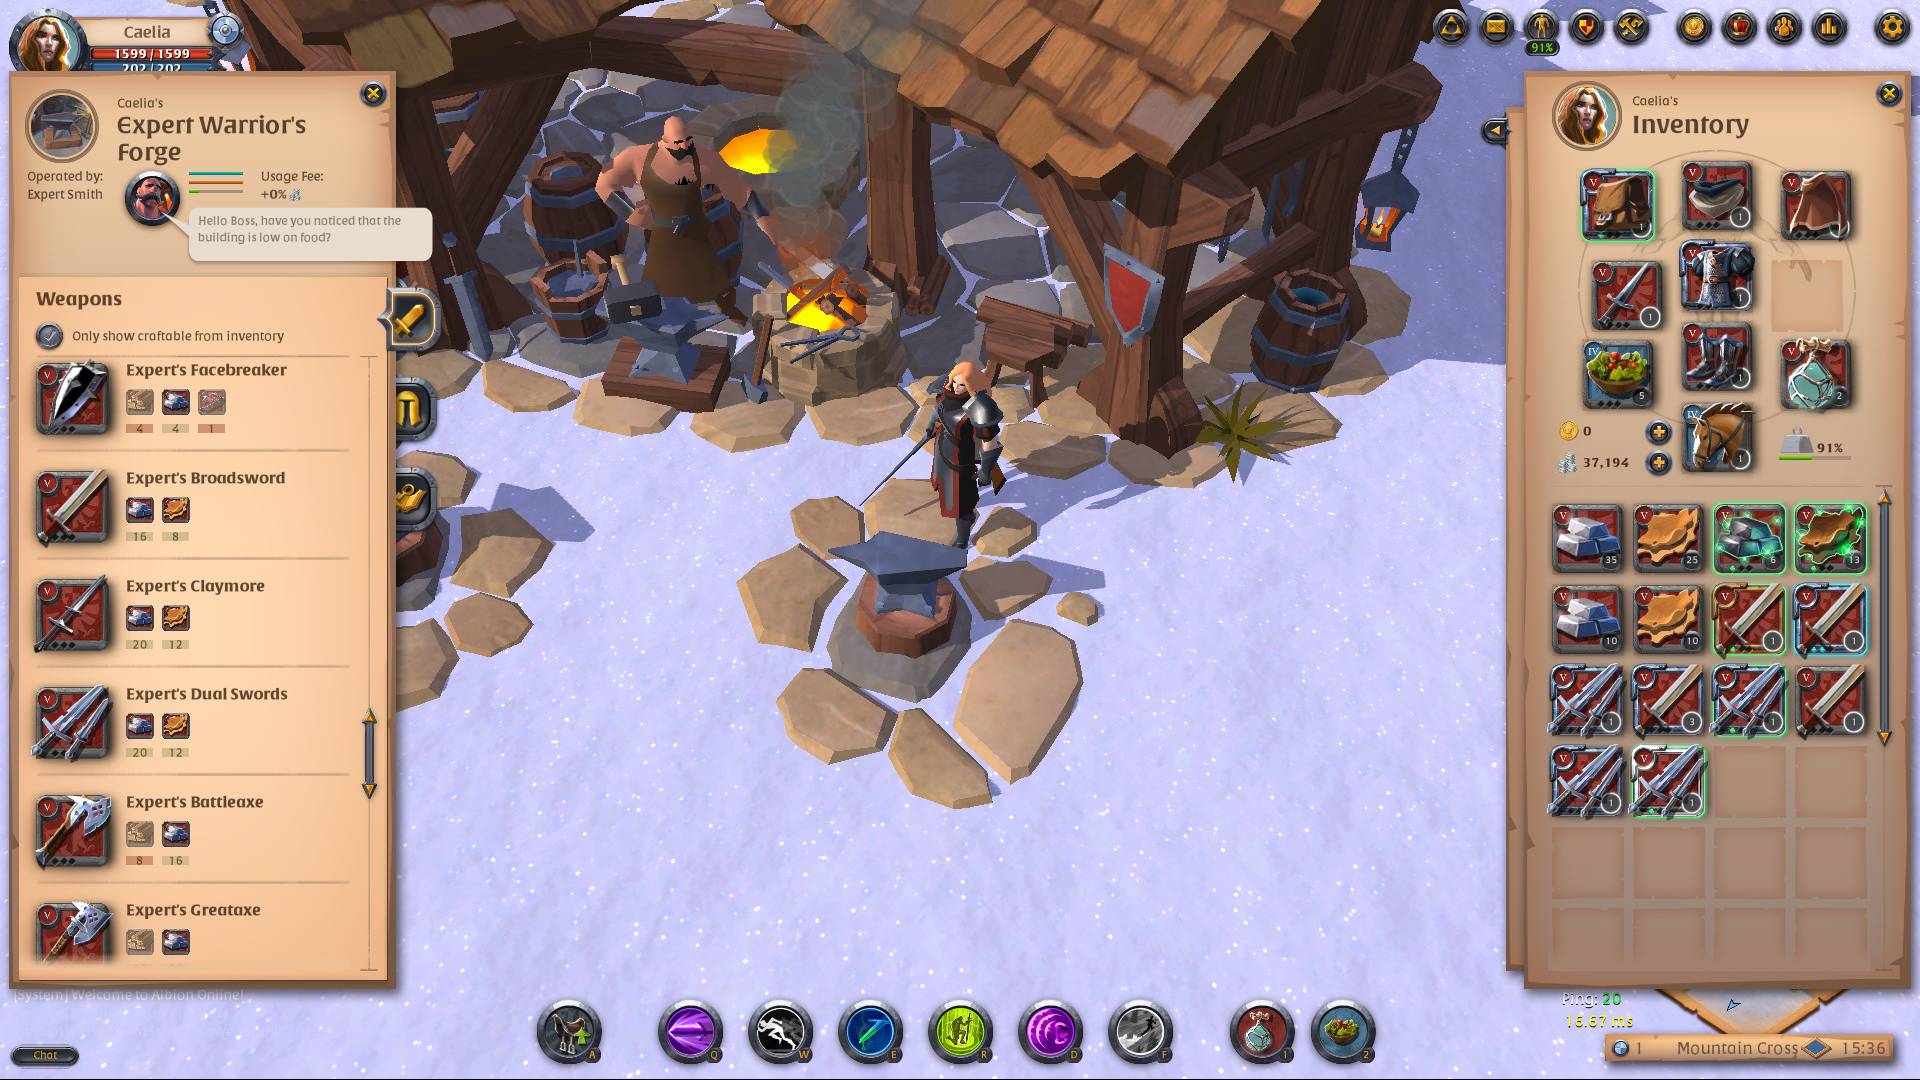 Game PC gratis terbaik: Albion Online. Gambar menunjukkan karakter berdiri di luar rumah di hari bersalju, dengan banyak permainan